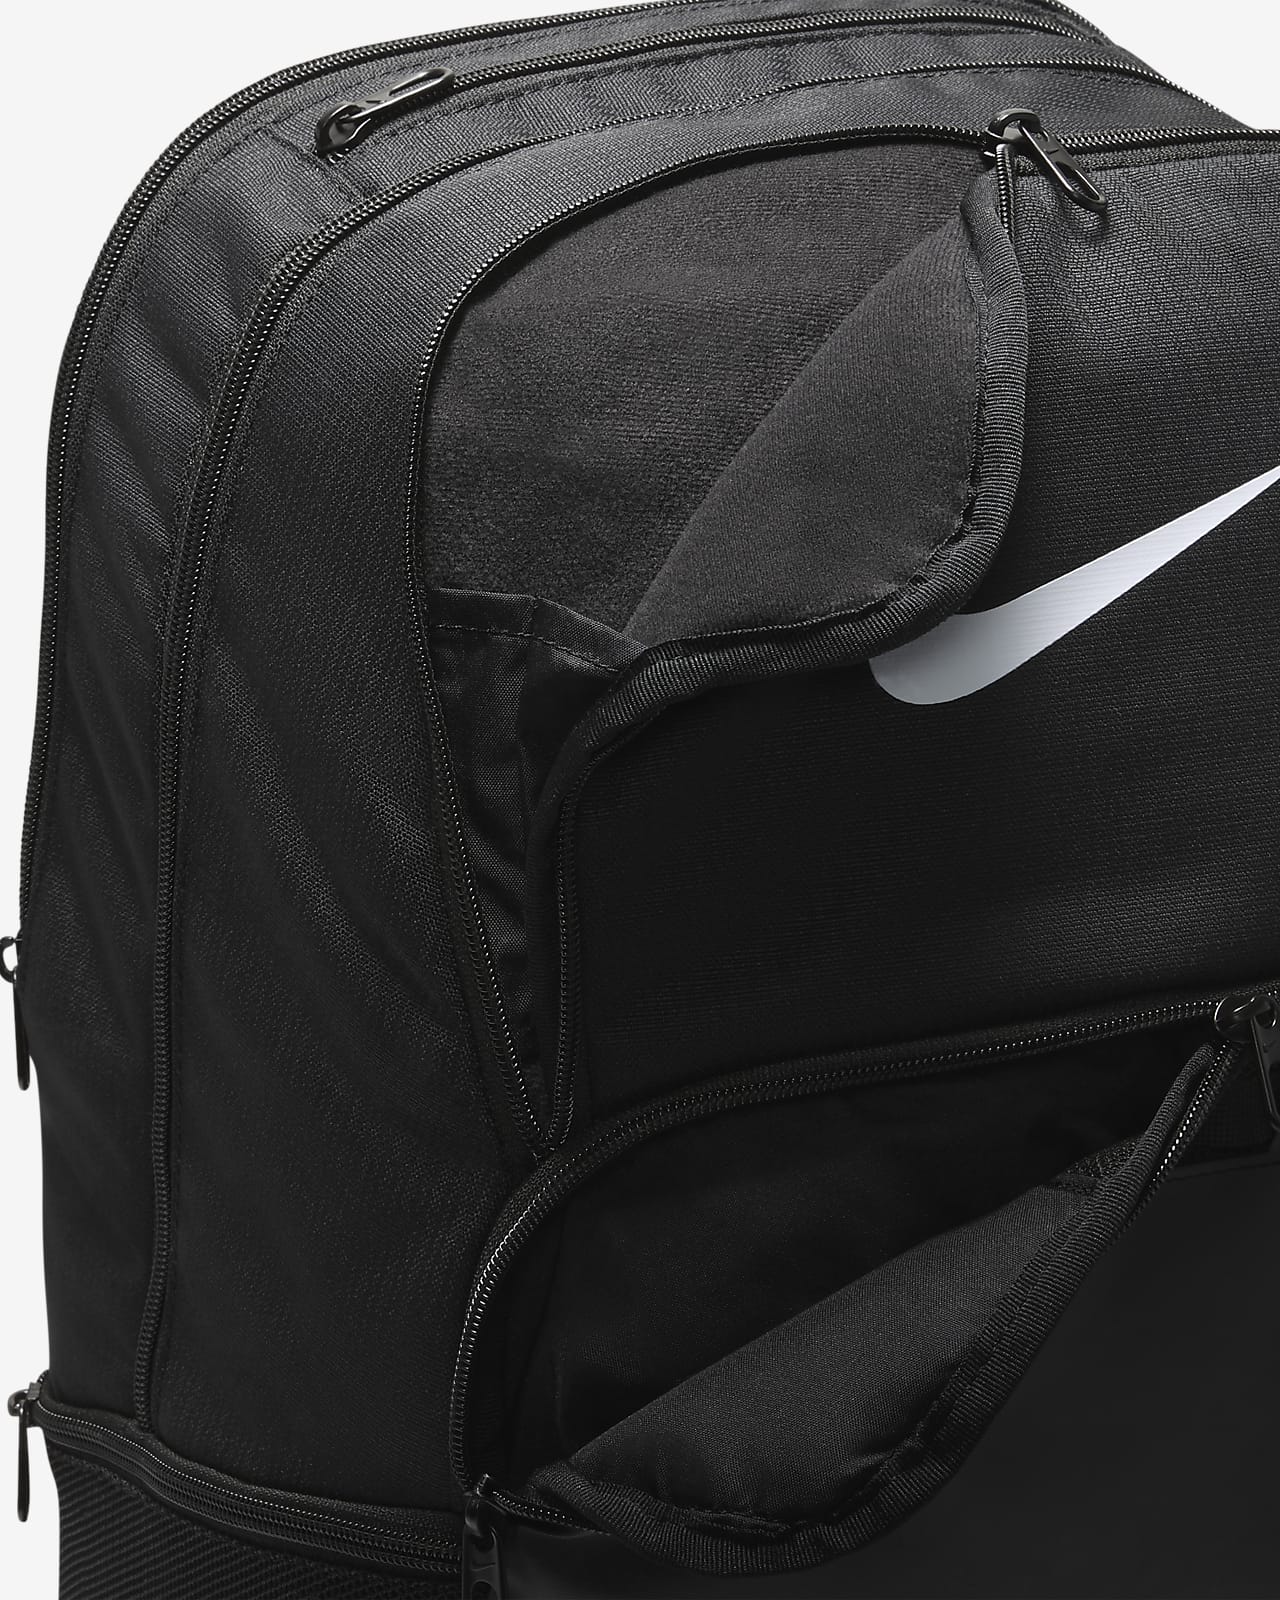 Nike Brasilia 9.5 Xl Backpack, Backpacks